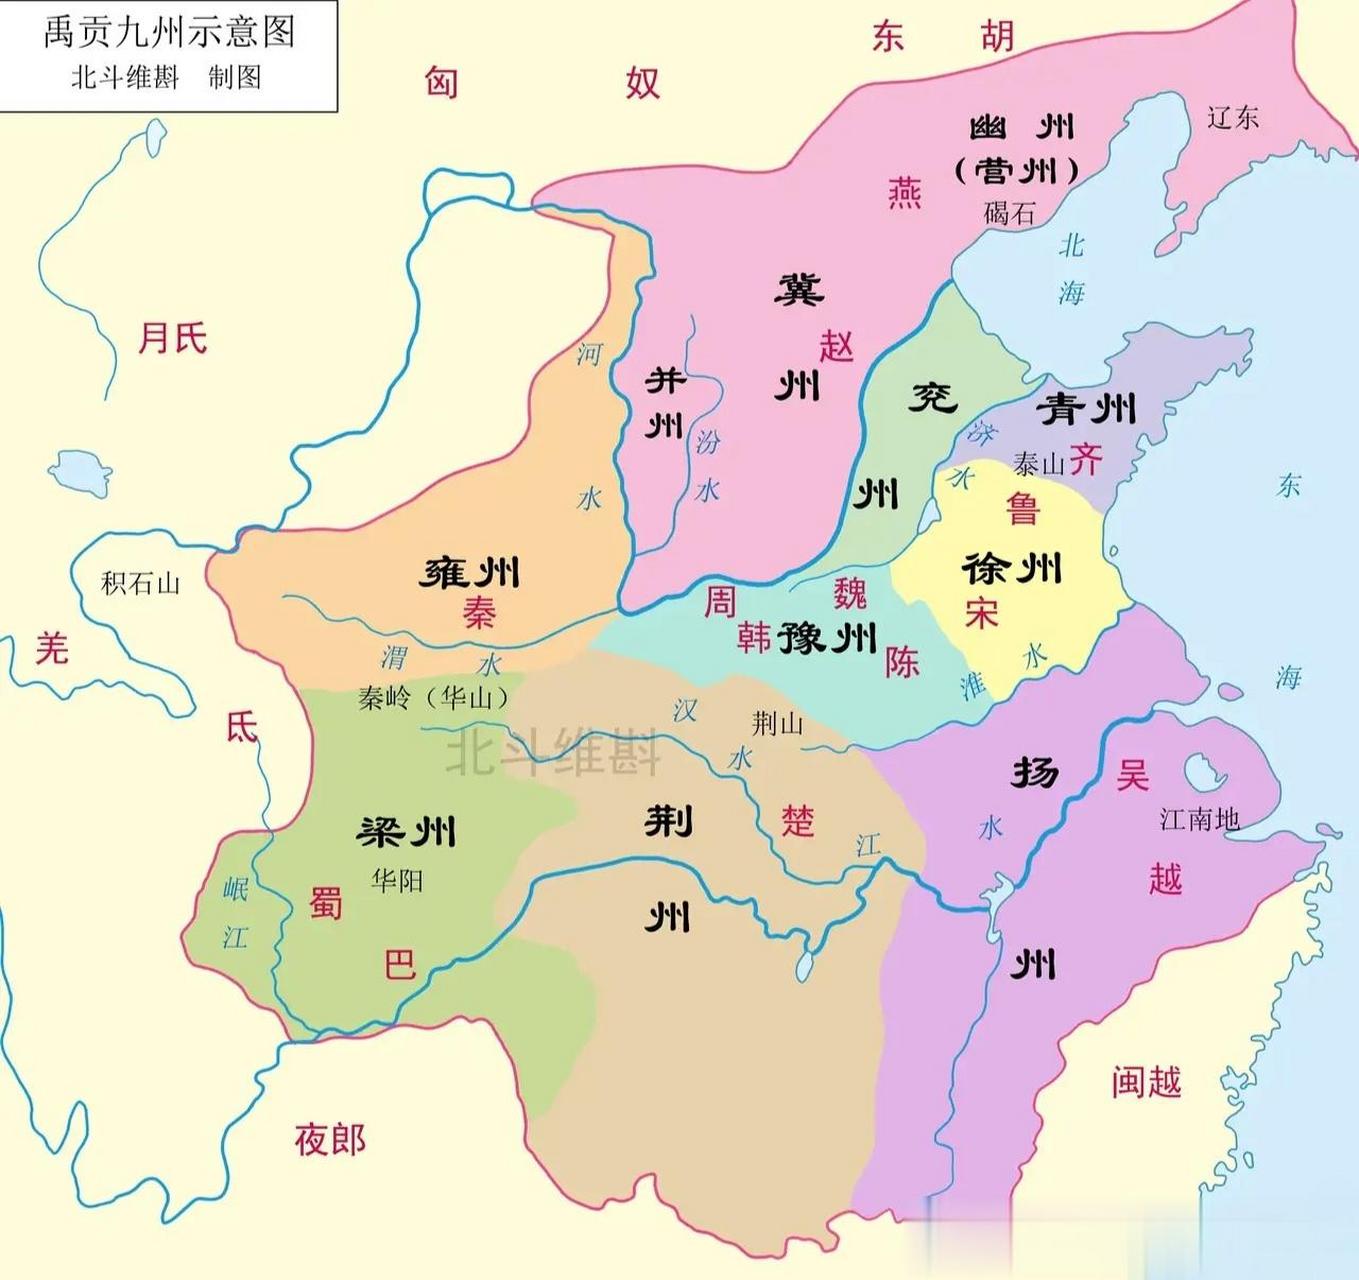 中国古人常常说起的九州是哪里?